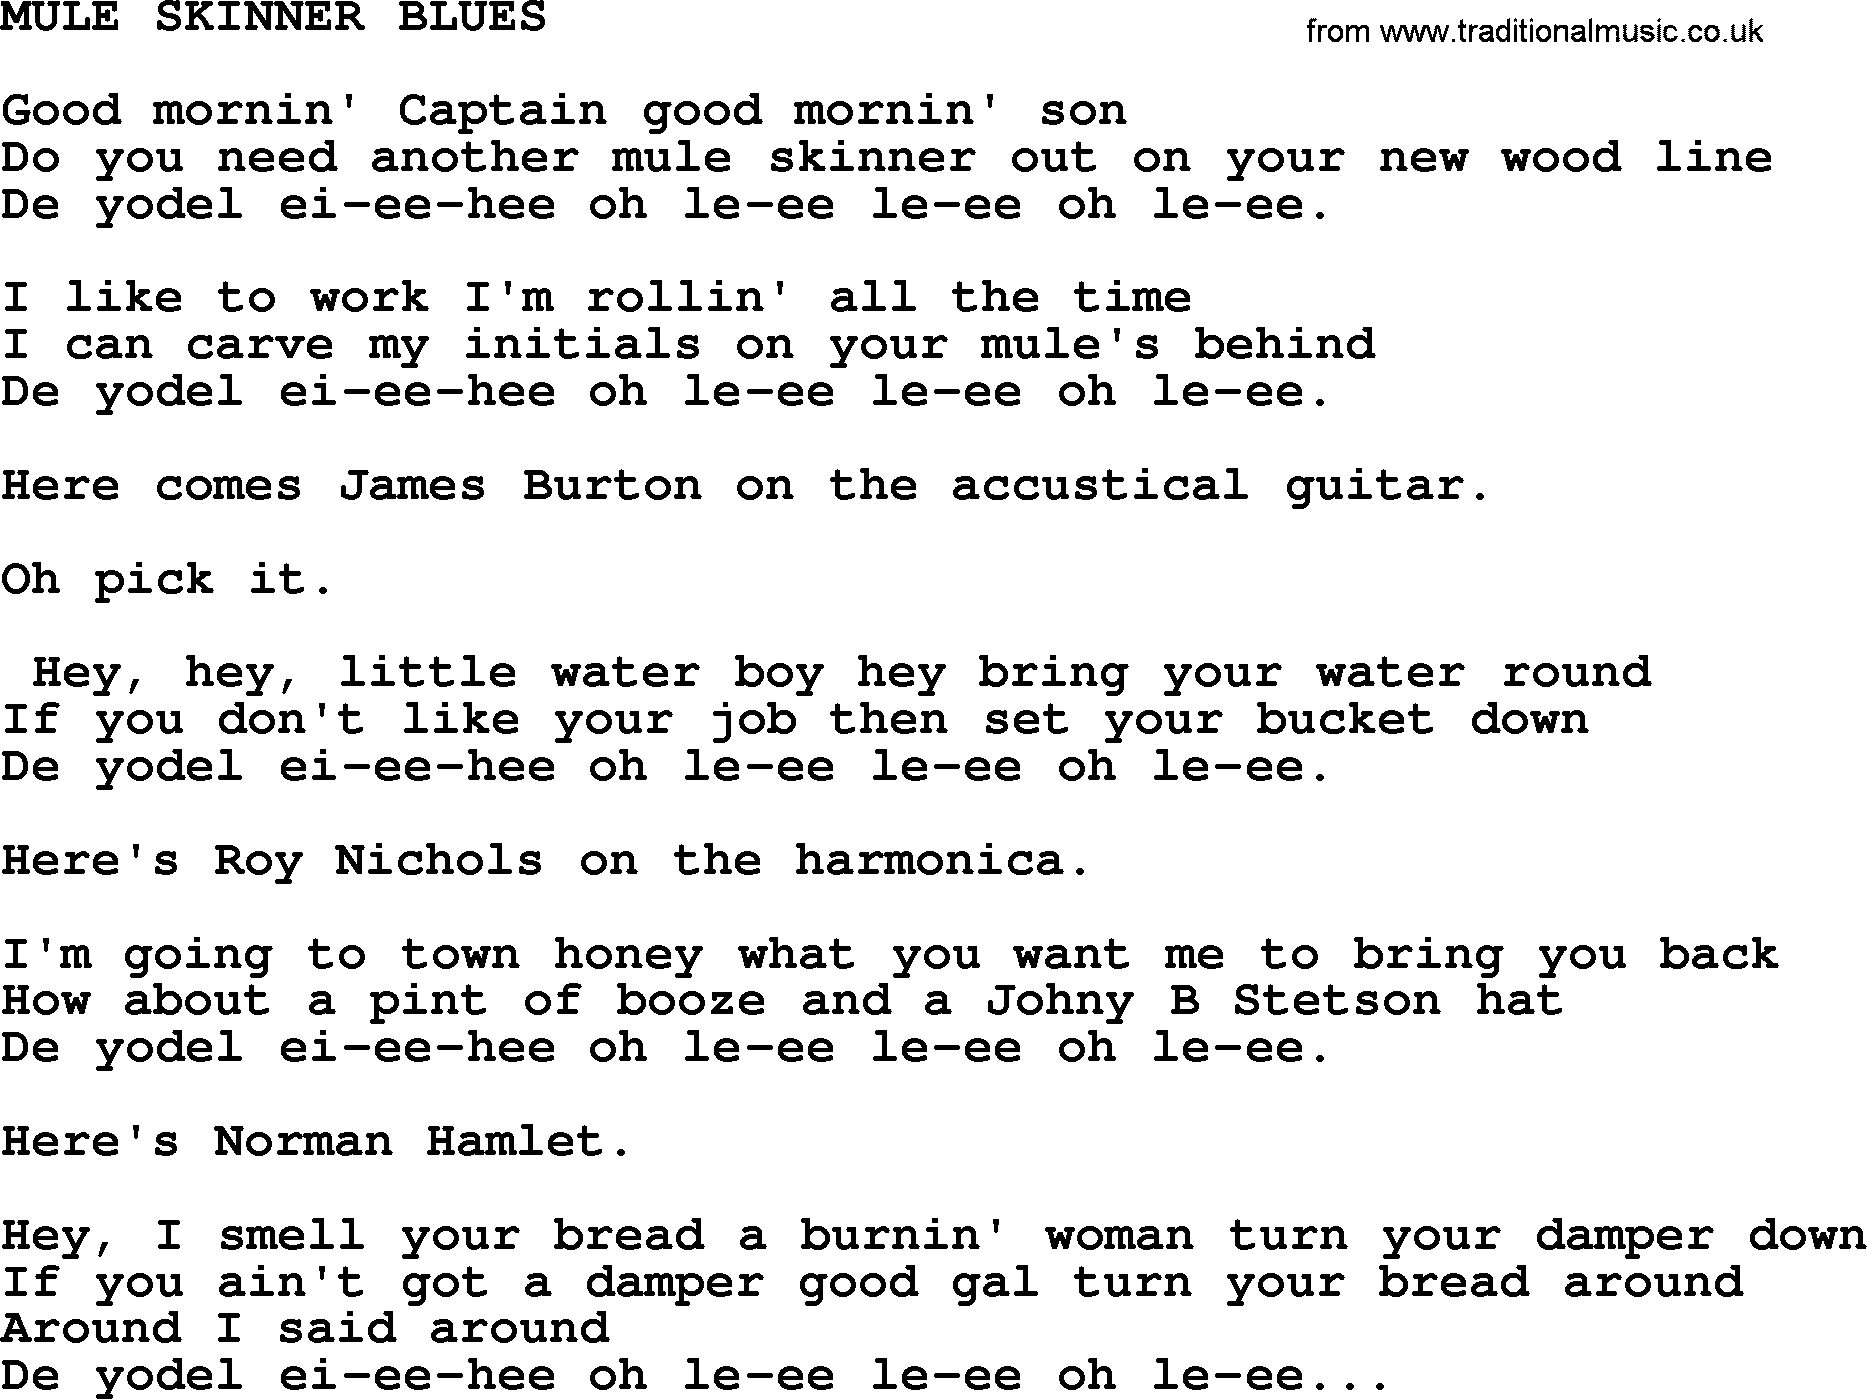 Merle Haggard song: Mule Skinner Blues, lyrics.